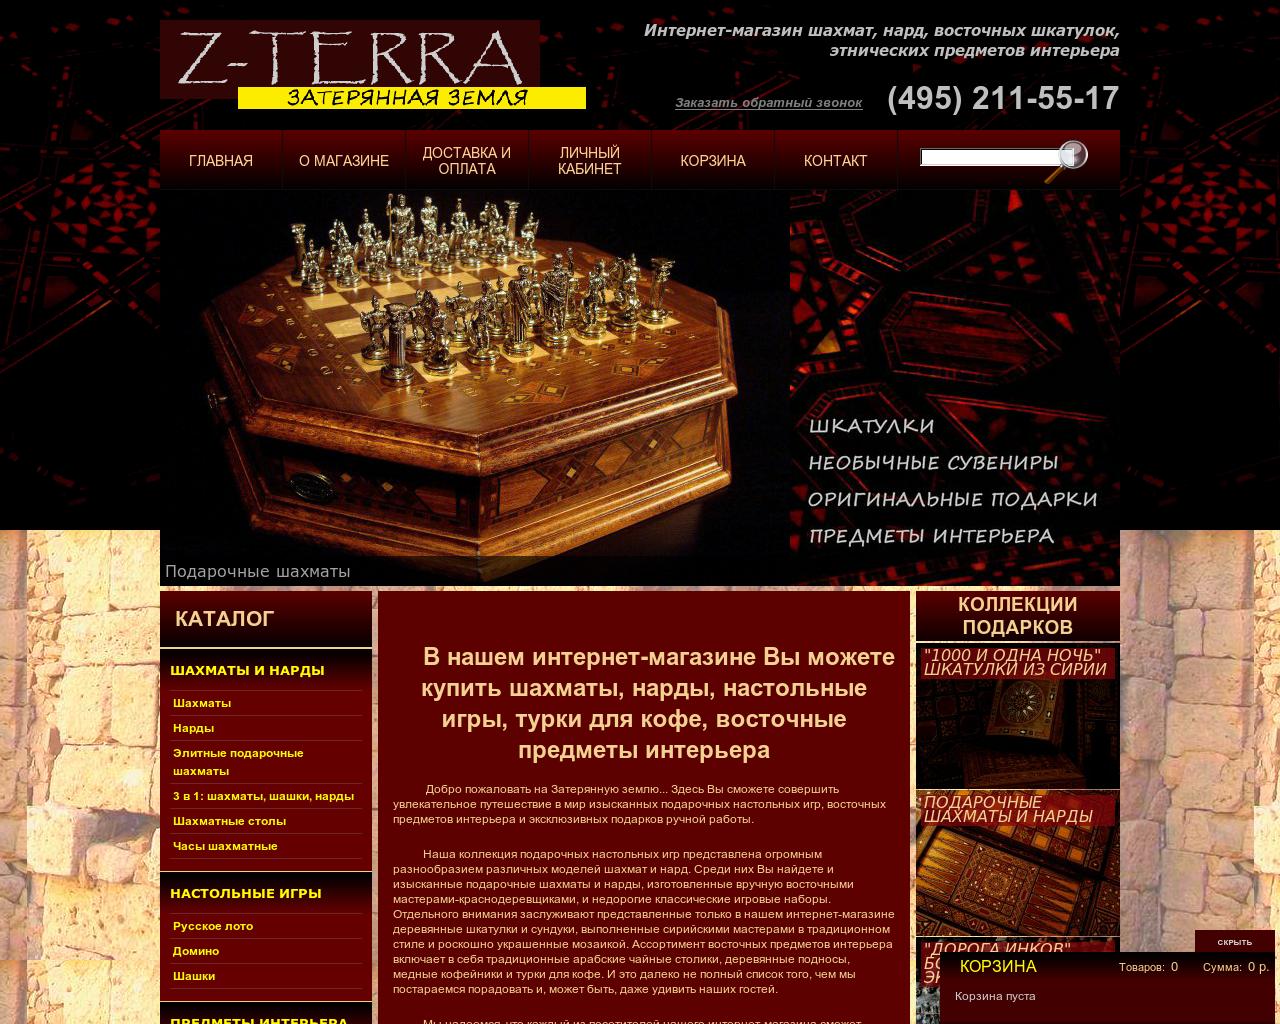 Изображение сайта z-terra.ru в разрешении 1280x1024